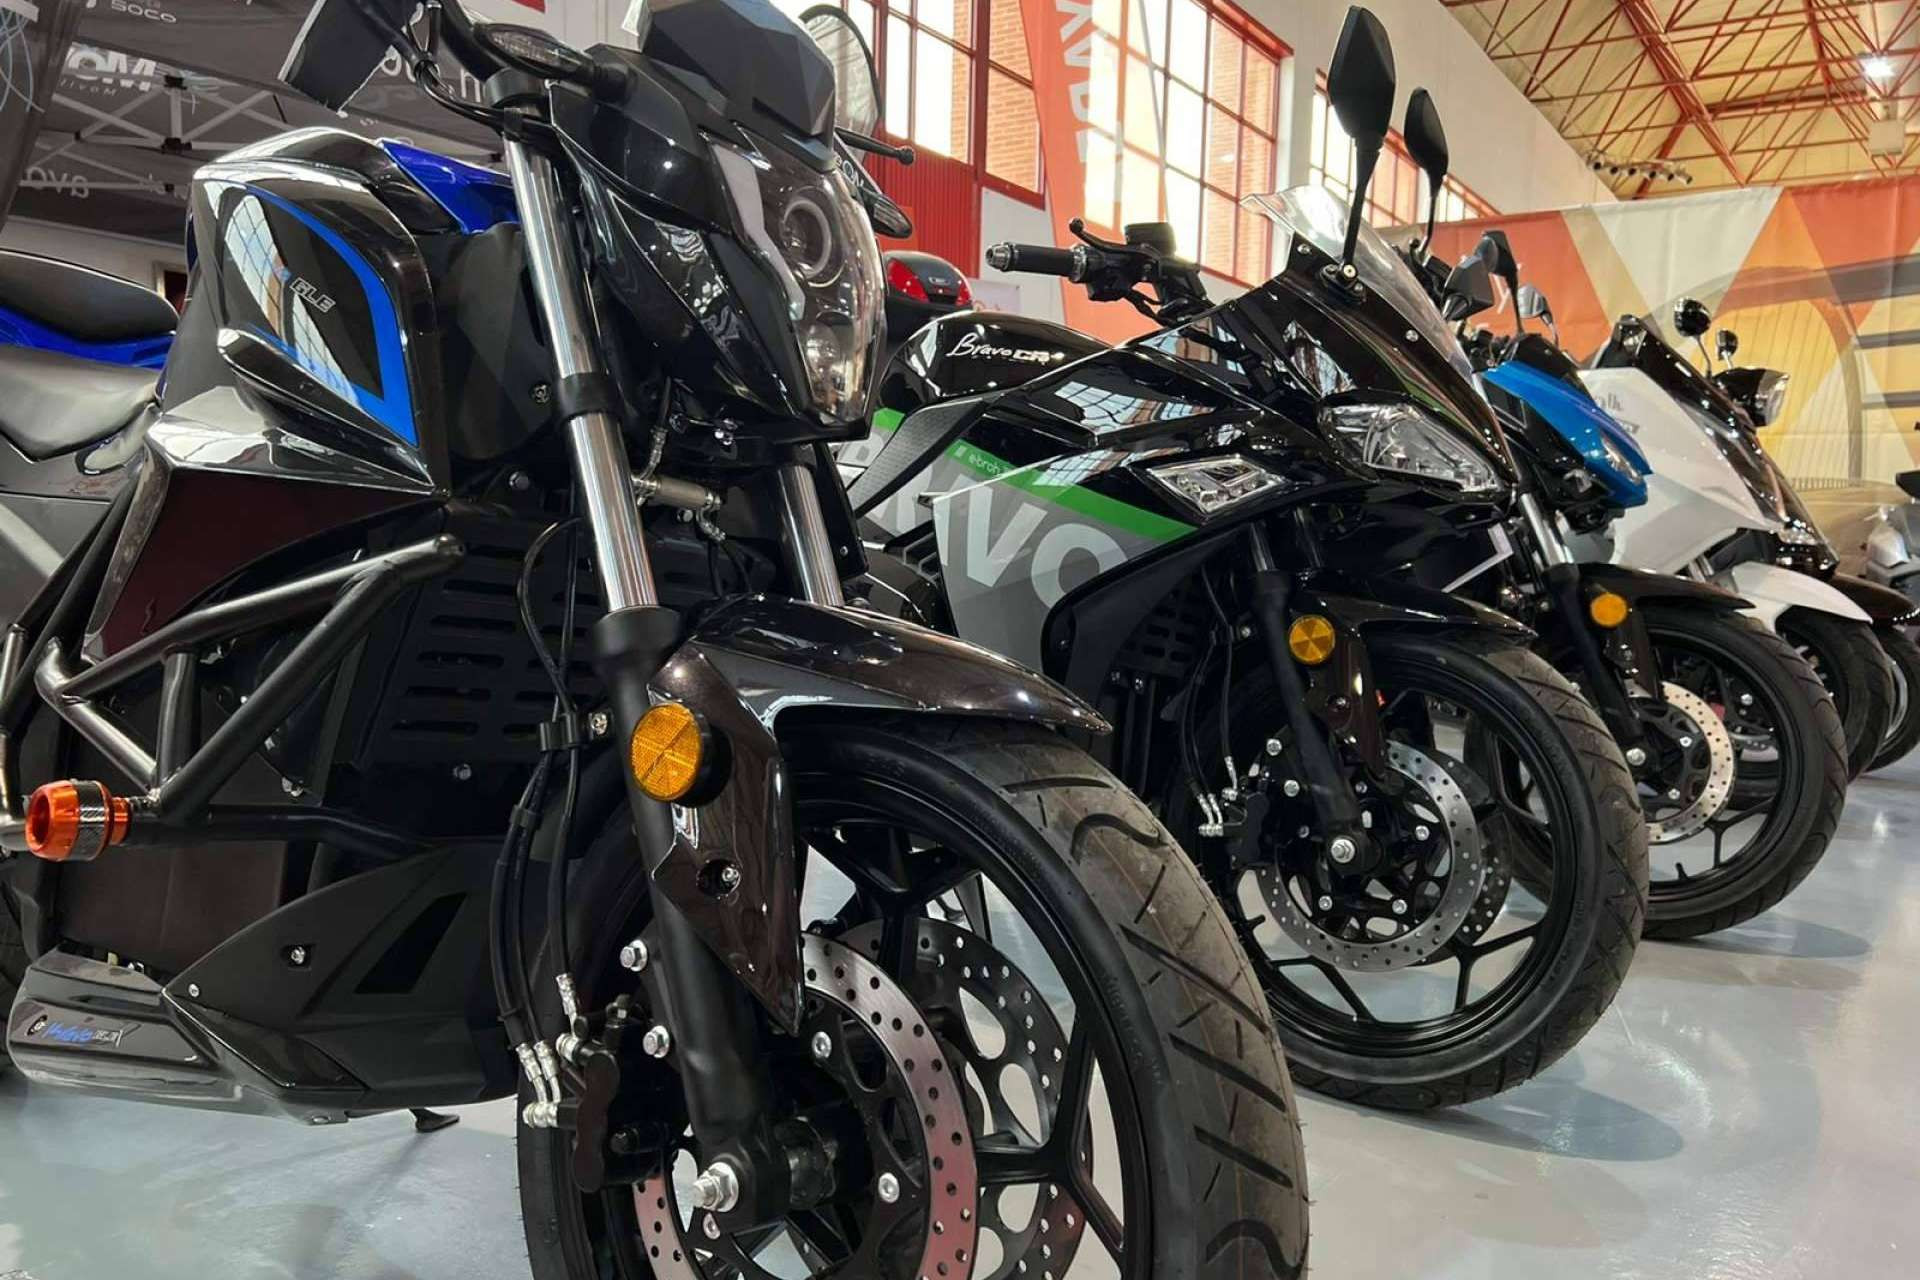  Grupo Ávolo, empresa especialista en la venta de motos eléctricas de diferentes marcas 